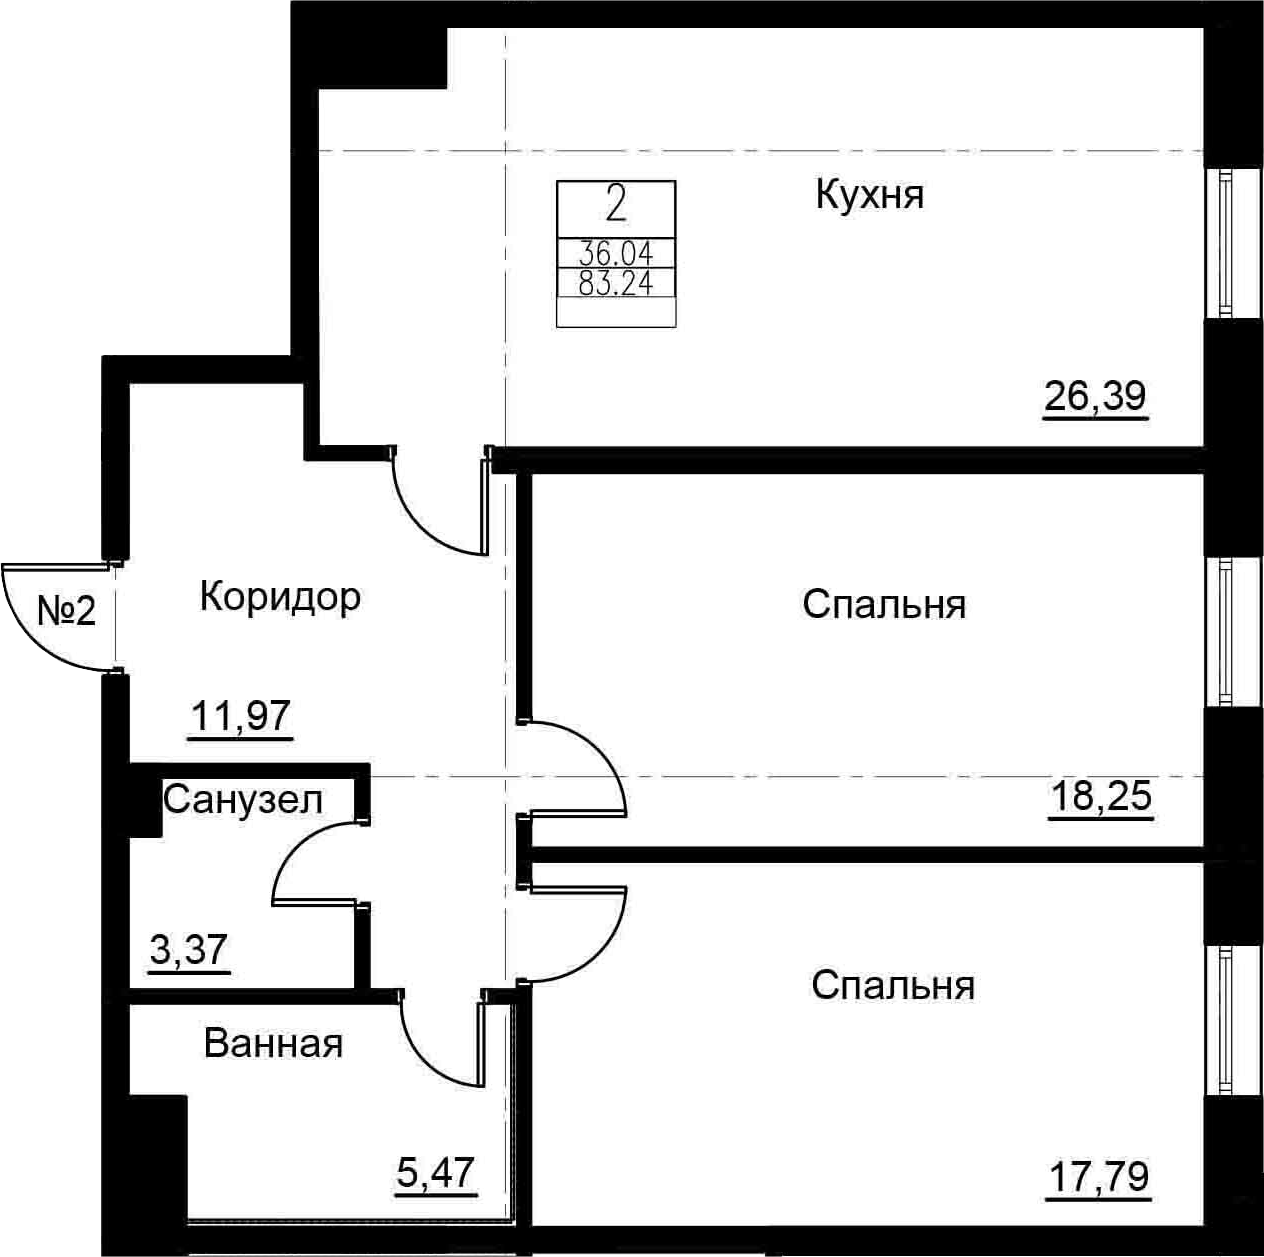 3Е-к.кв, 83.24 м², 2 этаж